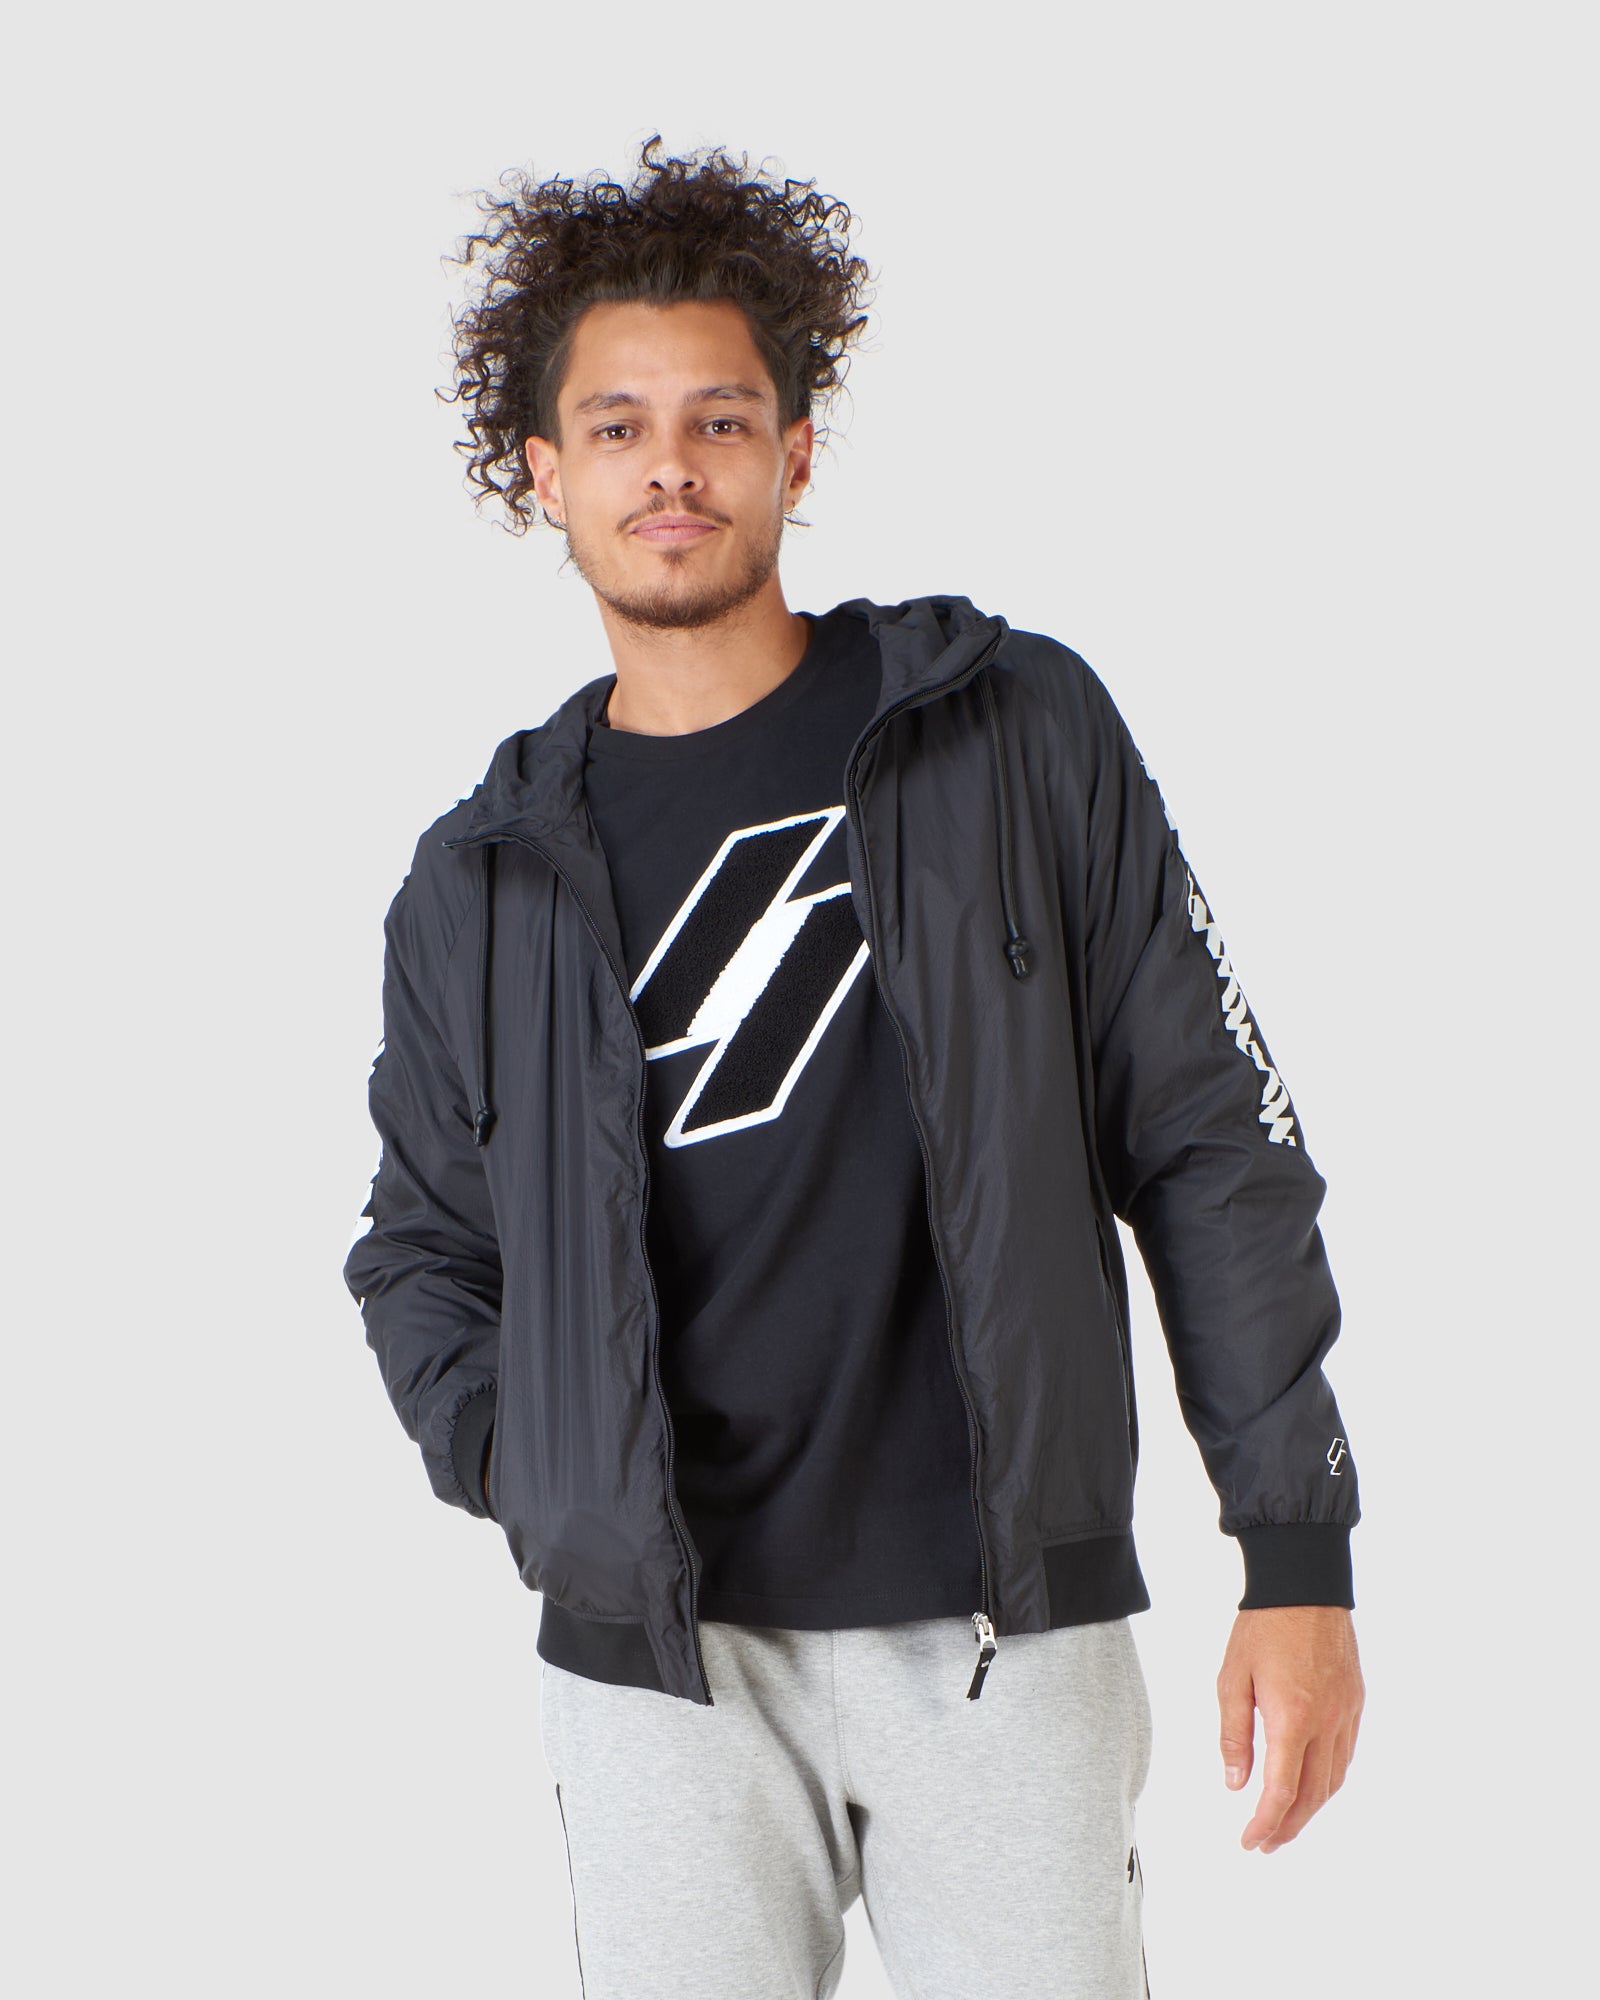 calça : Icônico e streetwear - Superdry Brasil outlet, Superdry t shirt  captura a cultura de rua e abraça o estilo de vida urbano com Superdry  jacket.